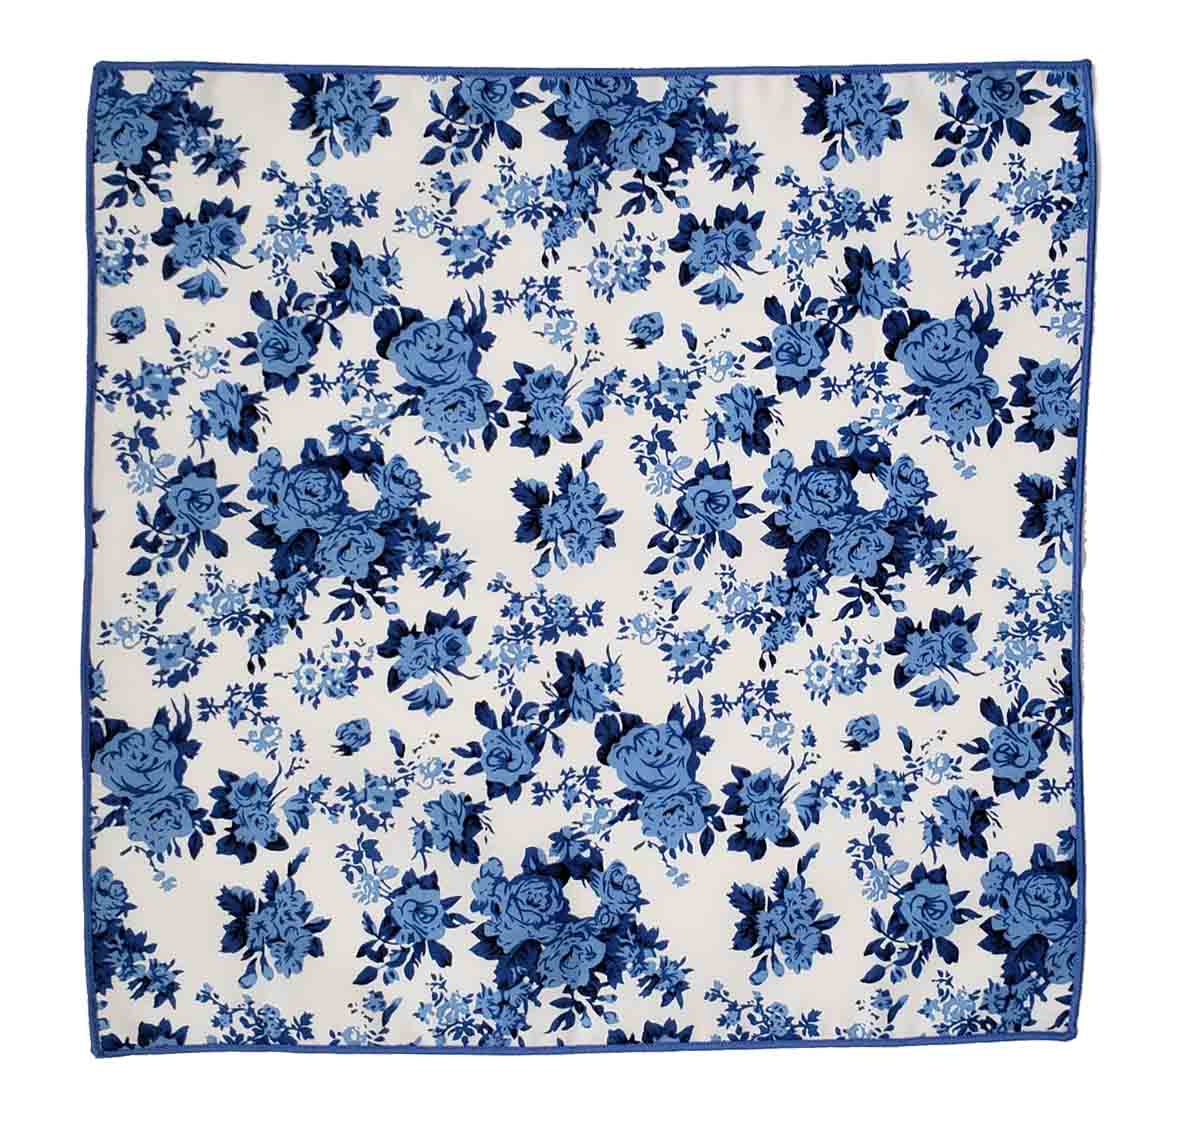 Gascoigne Floral Pocket Square Cotton Blue White Men's